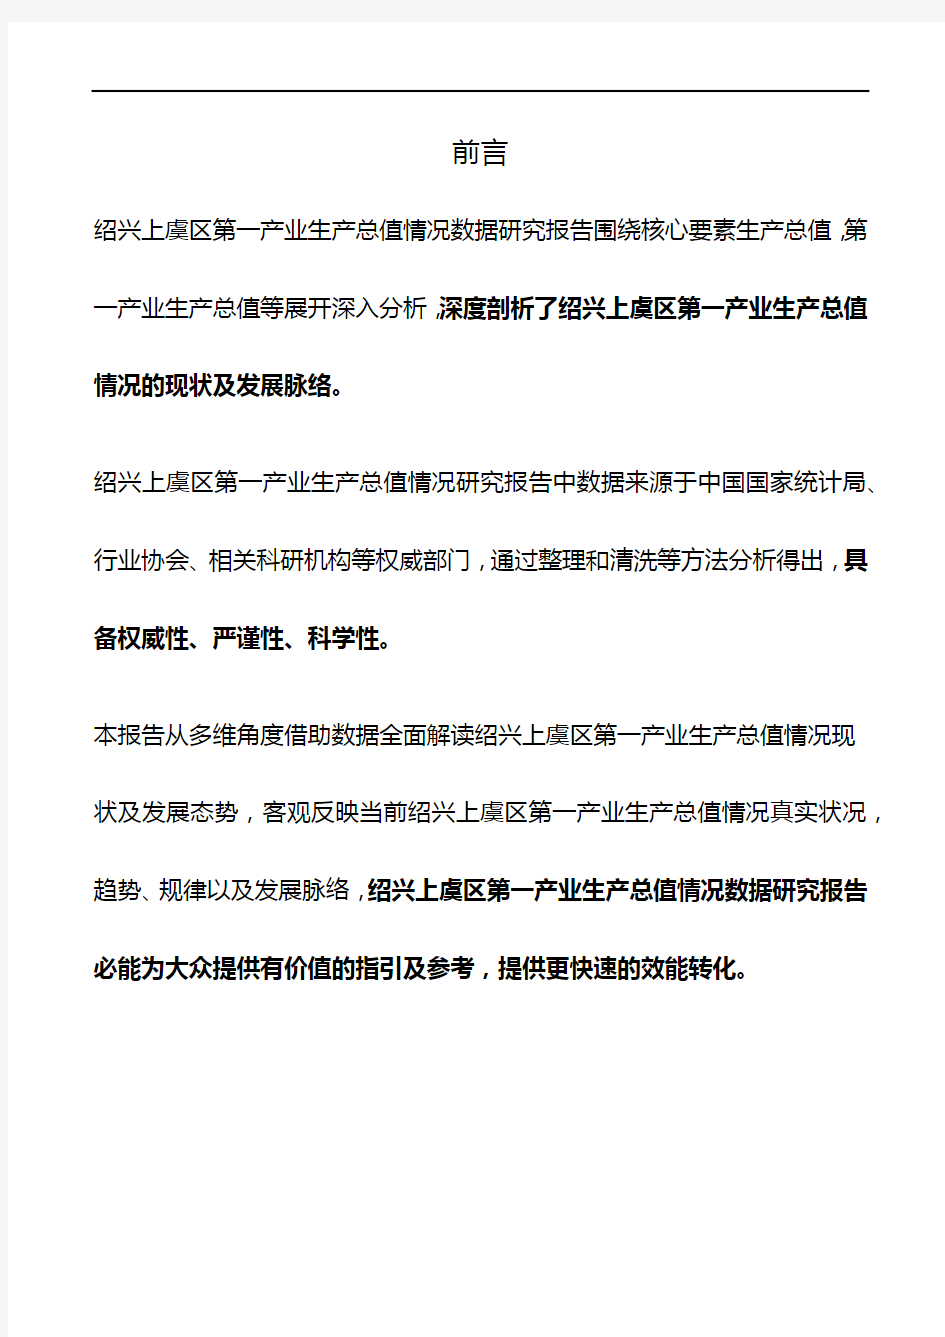 浙江省绍兴上虞区第一产业生产总值情况数据研究报告2019版